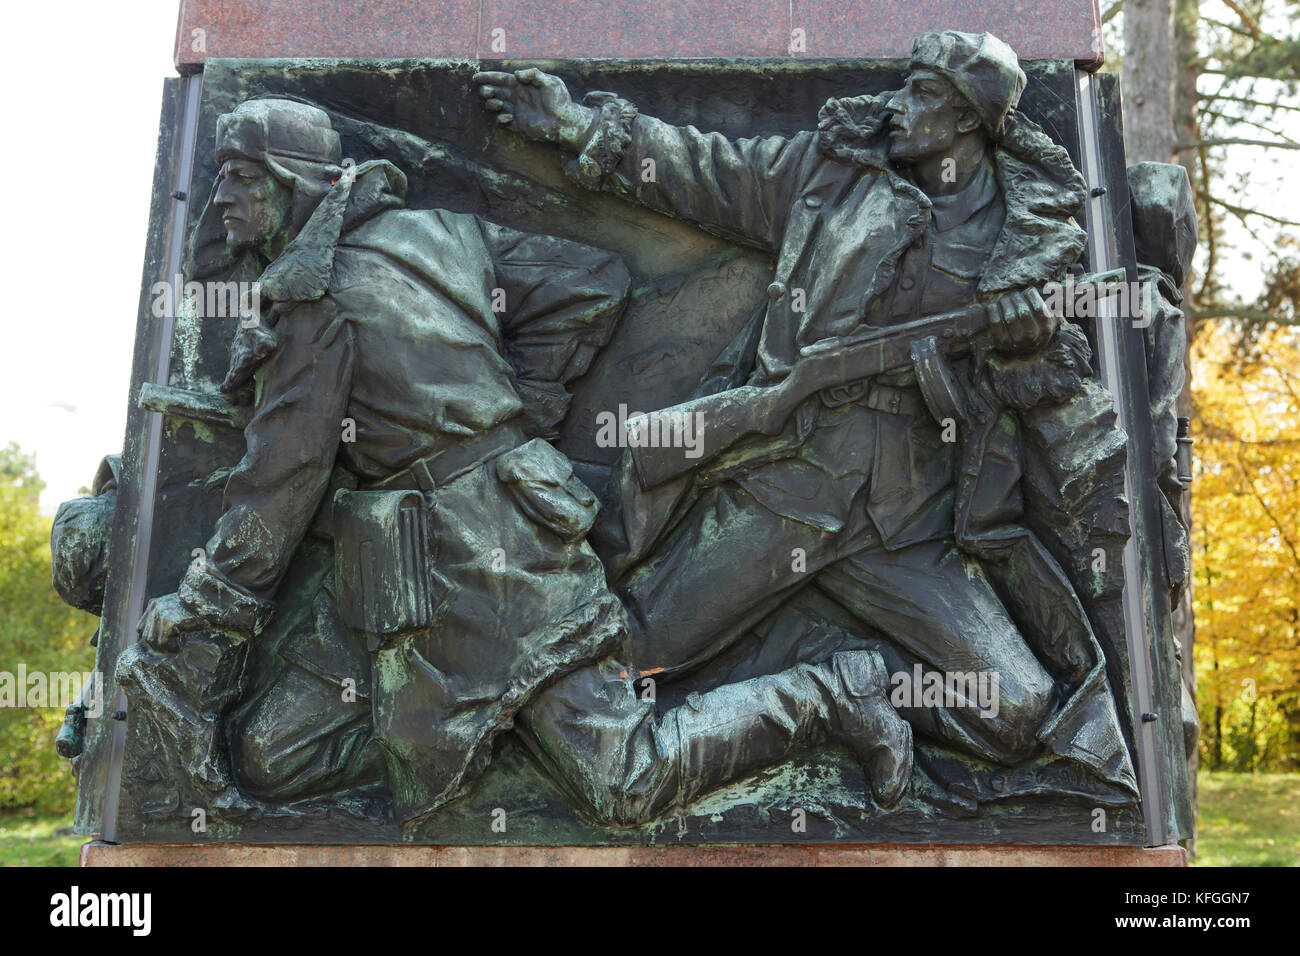 Schlacht von sokolovo in der Bas Relief auf dem Sockel des Denkmals zu Otakar Jaroš durch tschechische Bildhauer Oskar Kozák (1958) in Mělník in Südböhmen, Tschechien. Die Schlacht von Sokolovo fand im März 1943 weiter in der Nähe von Charkow (heute in der Ukraine), wenn die laufenden Angriff der Wehrmacht durch gemeinsame sowjetischen und tschechoslowakischen Streitkräfte zu okolovo verzögert wurde. Tschechische Offizier Otakar Jaroš wurde in der Schlacht bei Sokolovo getötet und wurde das erste Mitglied einer ausländischen Armee mit dem goldenen Stern der Held der Sowjetunion, das war die höchste Auszeichnung in der udssr eingerichtet. Stockfoto